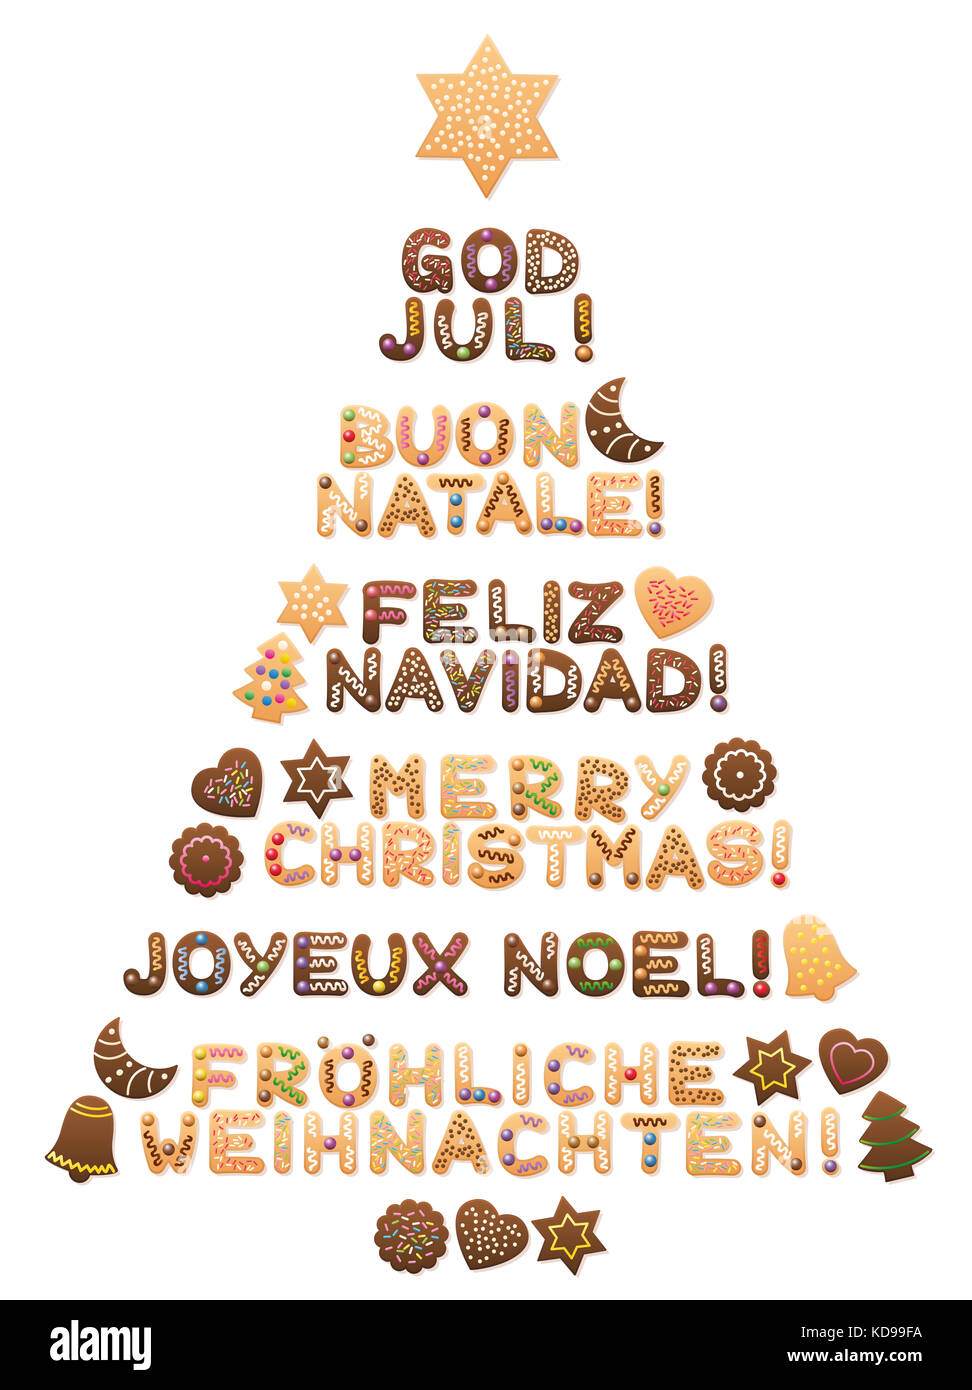 Poesie Di Natale In Francese.Scritto Tedesco Immagini E Fotos Stock Alamy